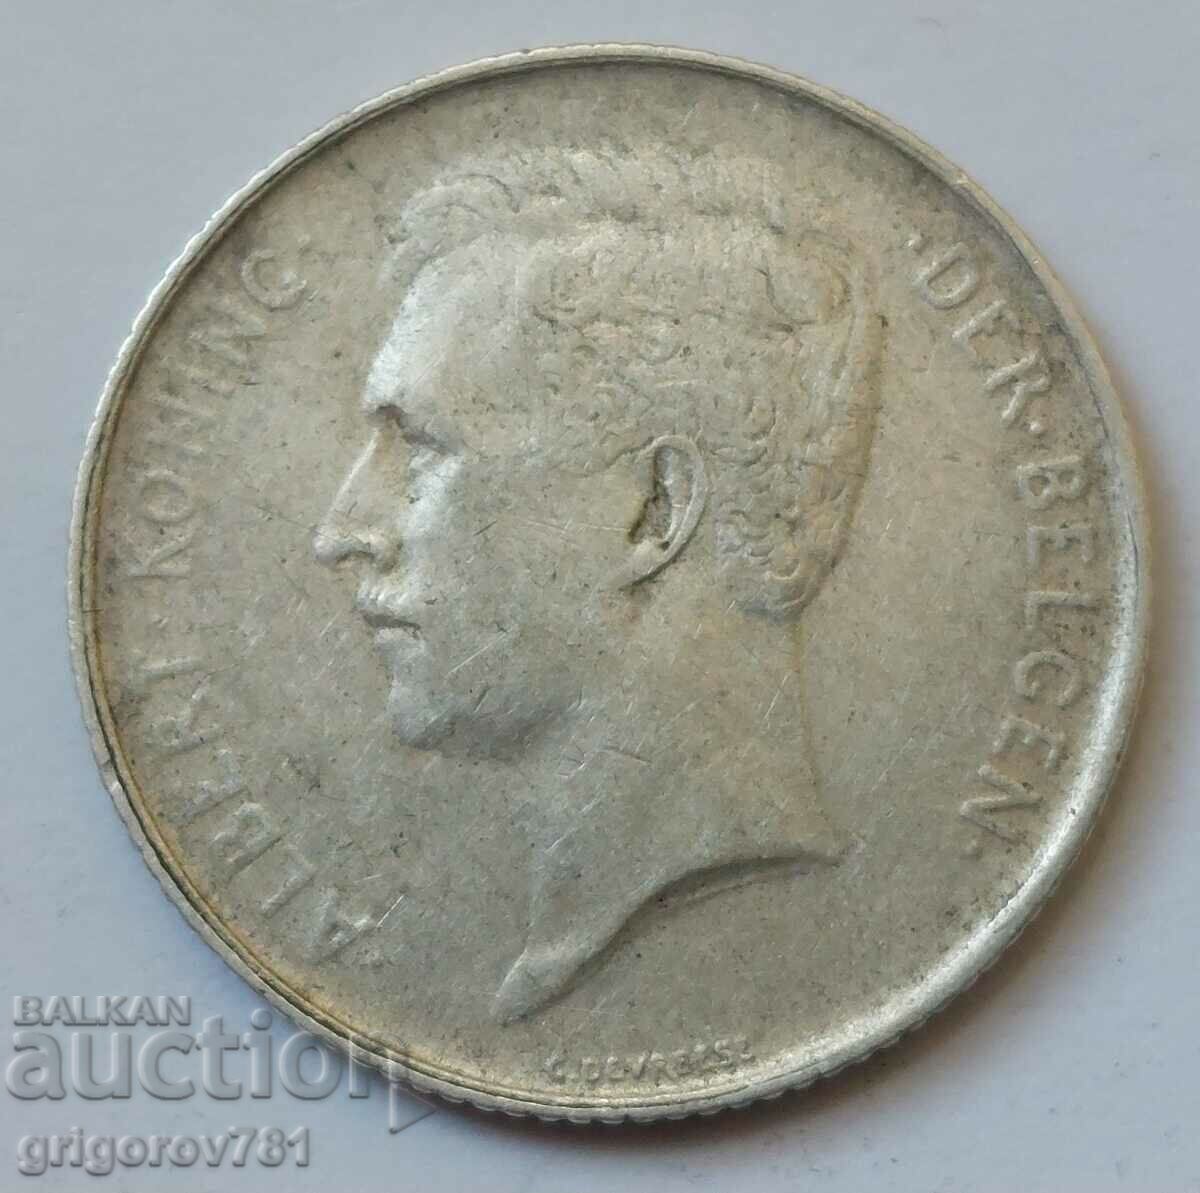 Ασημένιο 1 φράγκου Βέλγιο 1913 - ασημένιο νόμισμα #63